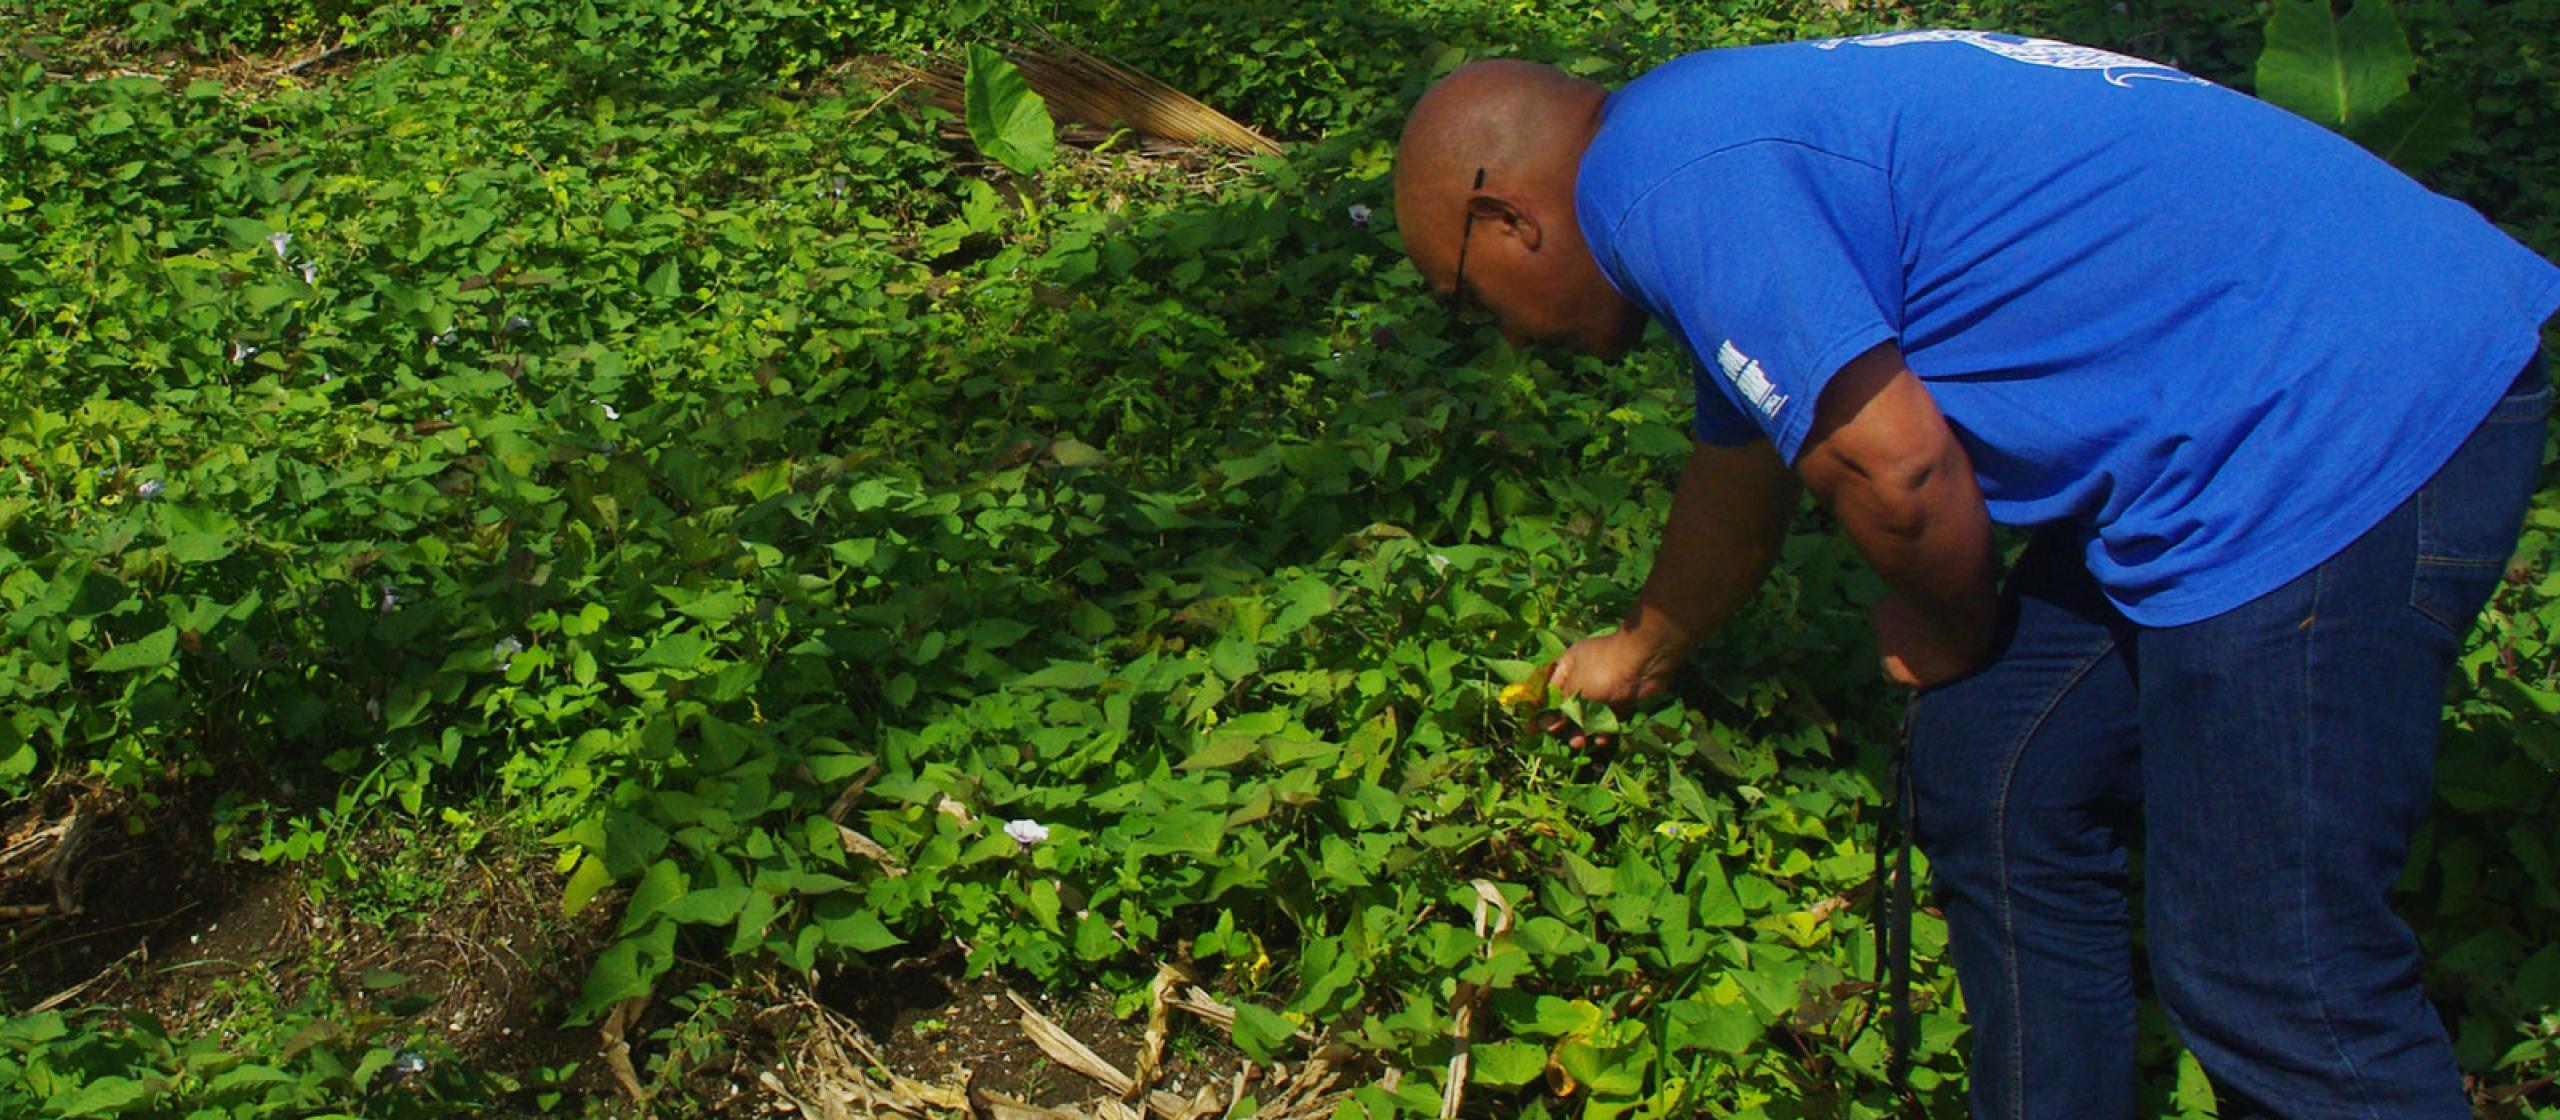 Tonga soils researcher bending down in green field